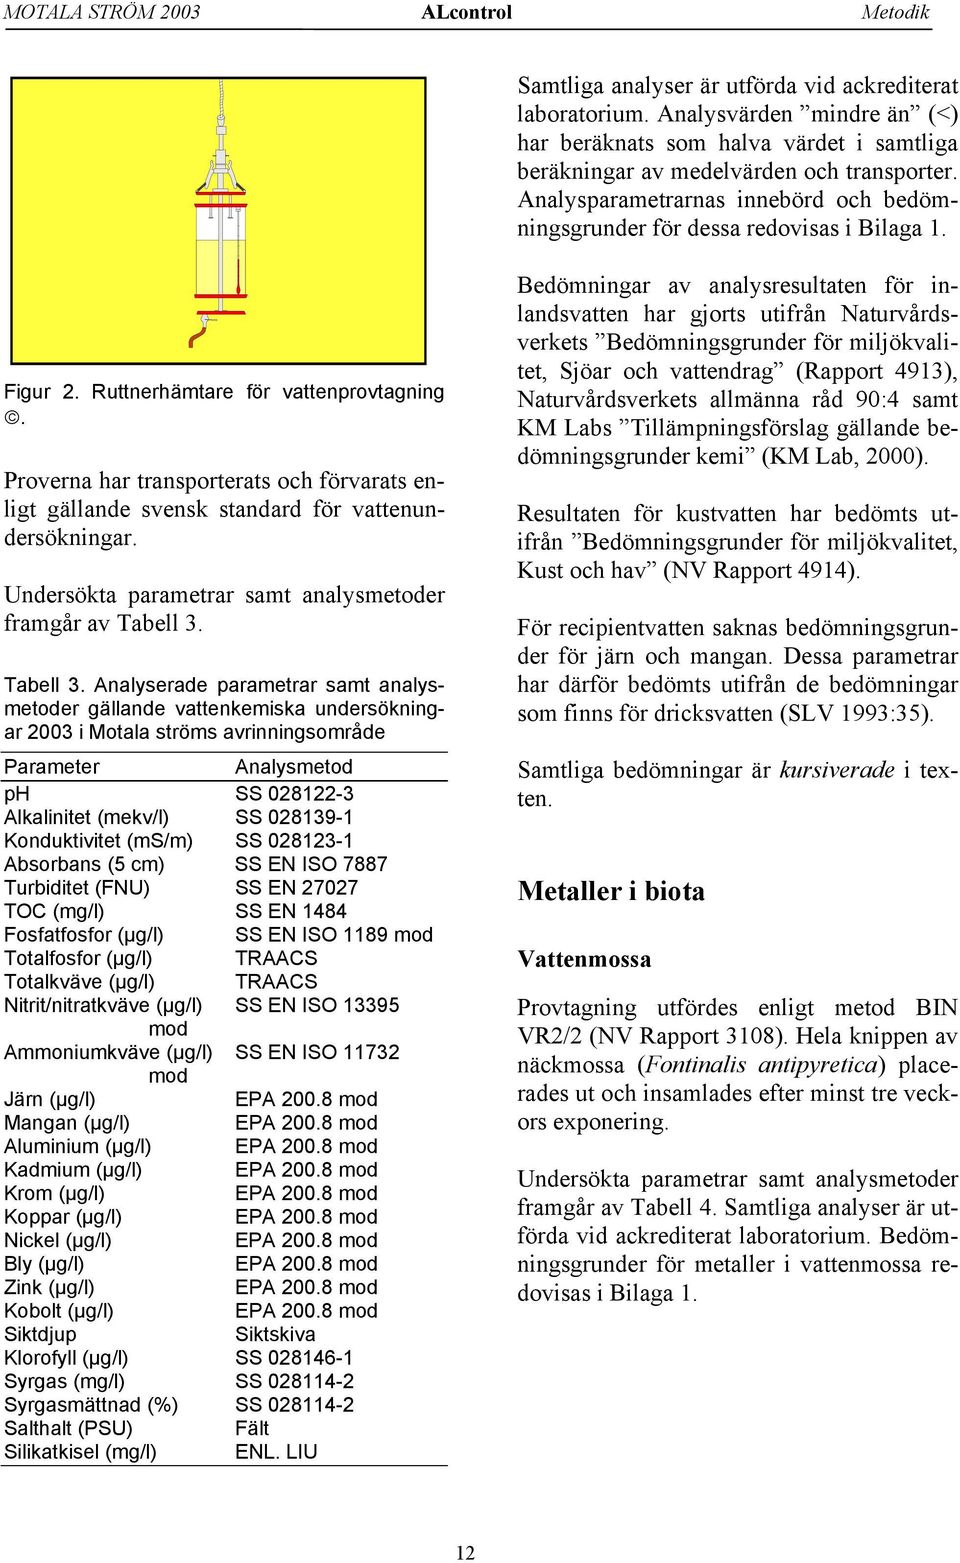 Figur 2. Ruttnerhämtare för vattenprovtagning. Proverna har transporterats och förvarats enligt gällande svensk standard för vattenundersökningar.